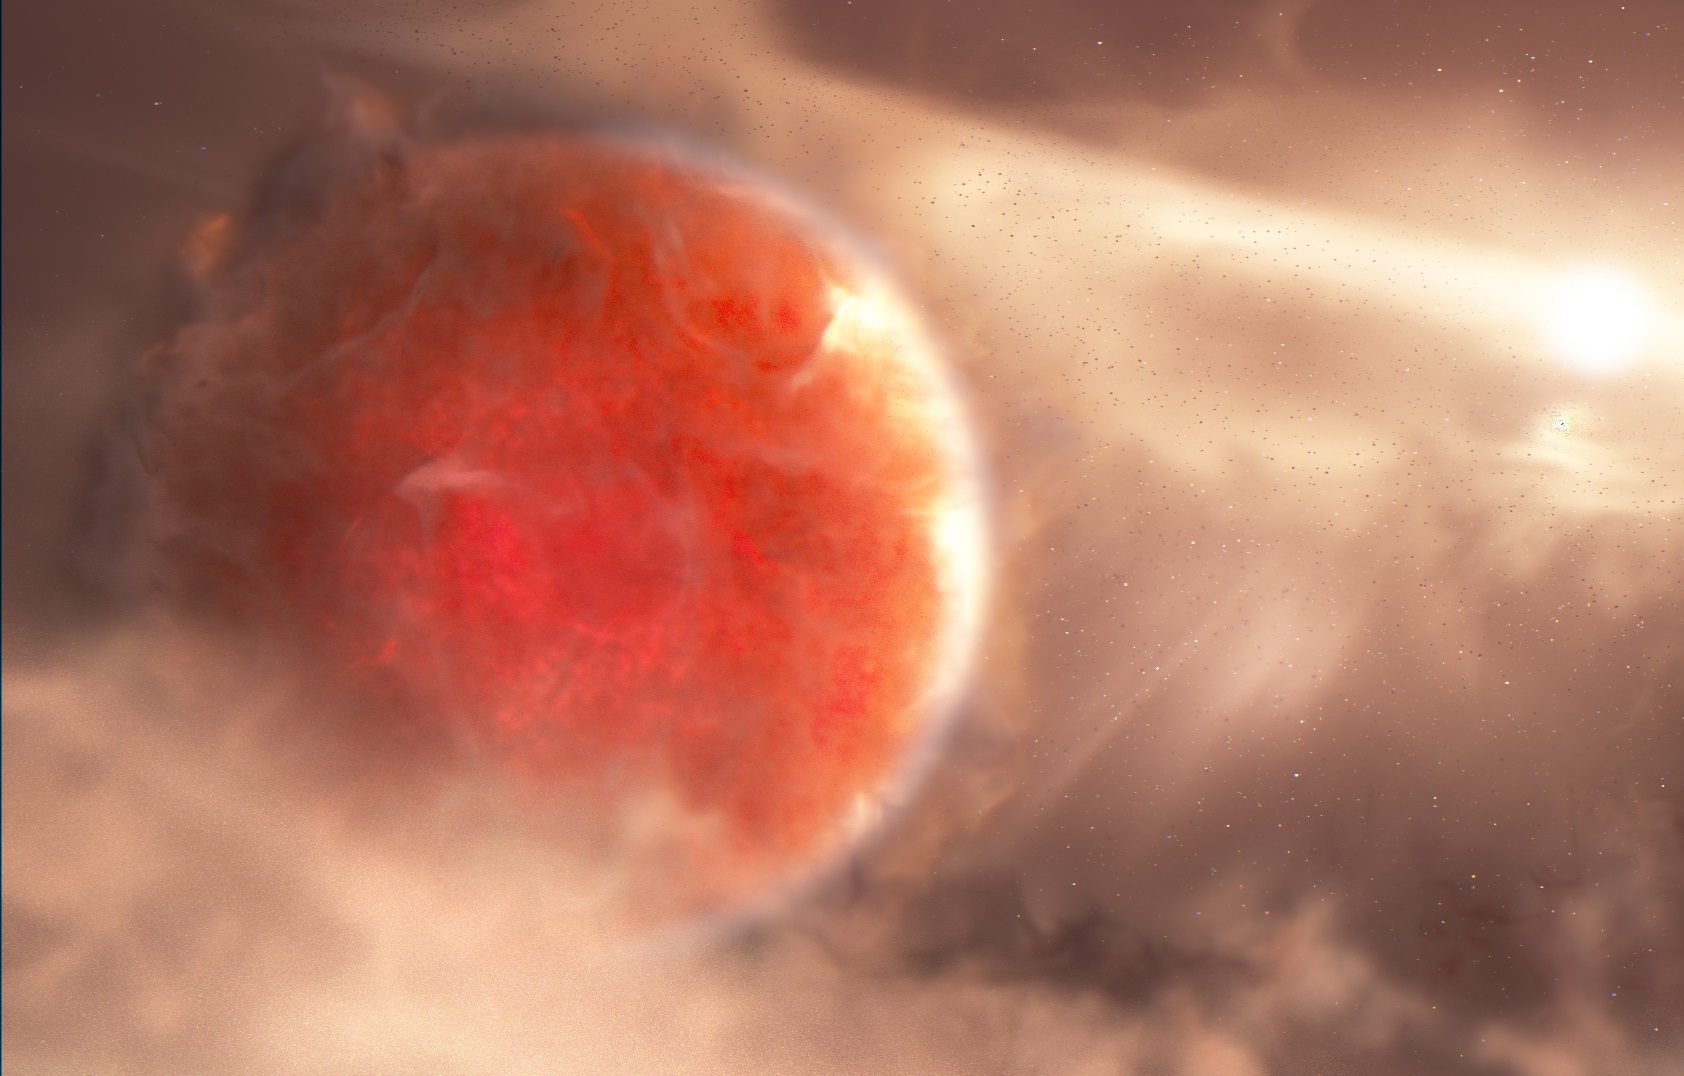 Este exoplaneta gigante se está formando de una manera muy extraña, dicen los astrónomos